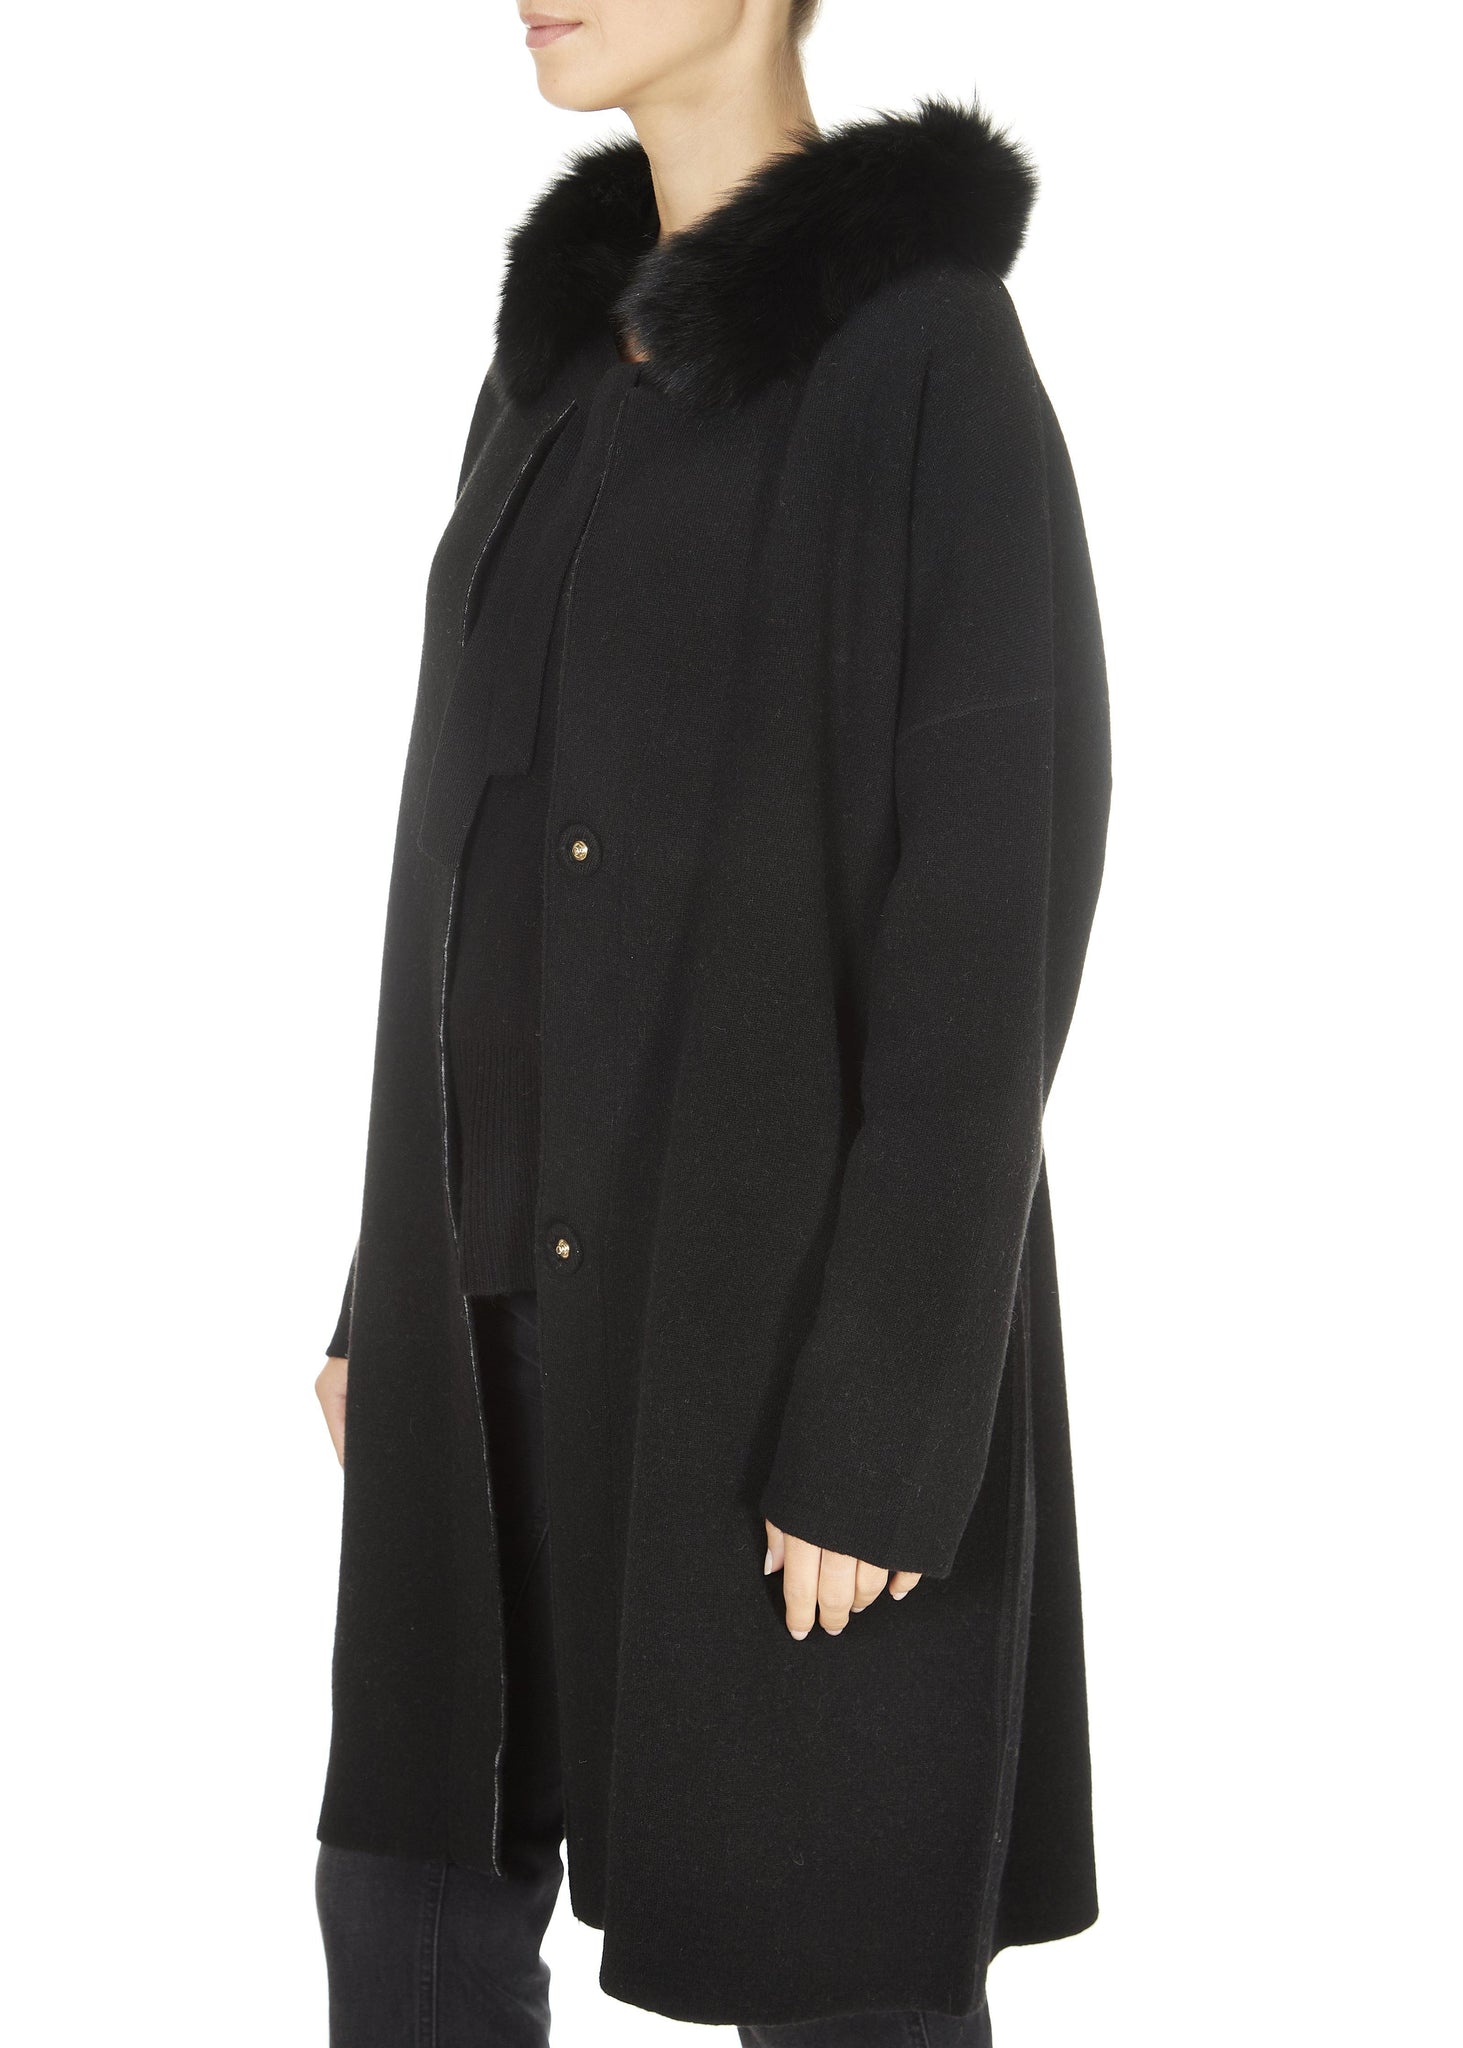 'Grafite' Black Fur Collar Cardigan Coat - Jessimara